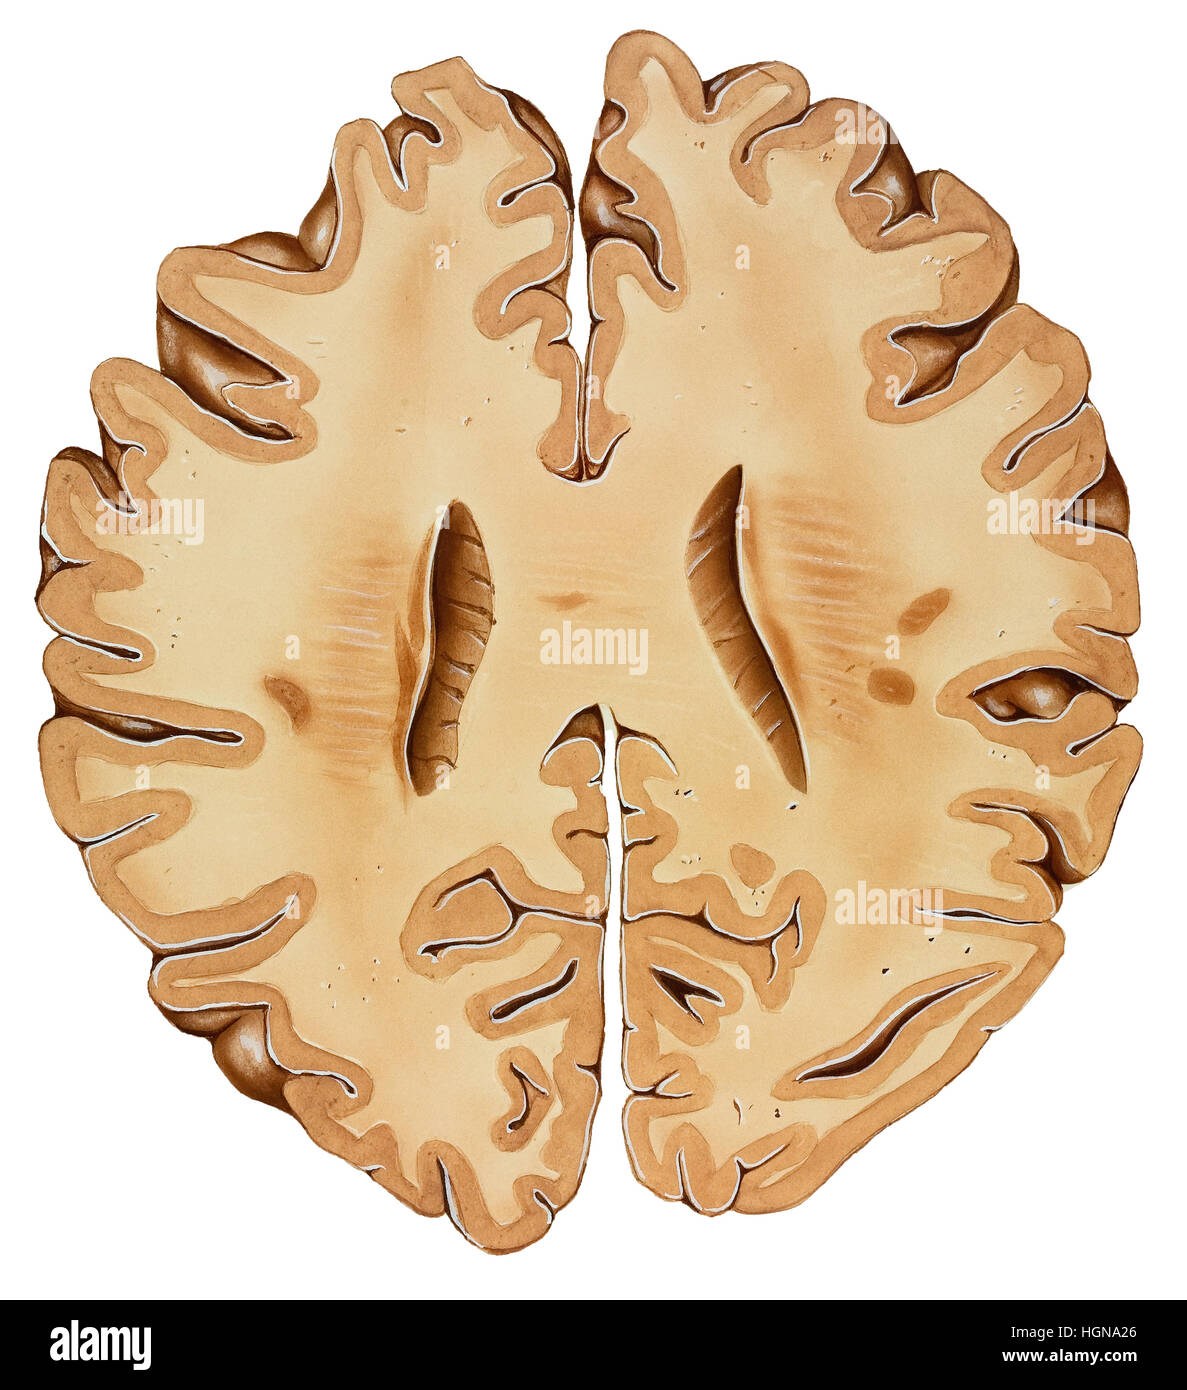 Gehirn-Abschnitt von der Spitze eines normalen menschlichen Kopfes (Unterteil), sagittale Abschnitt. Stockfoto